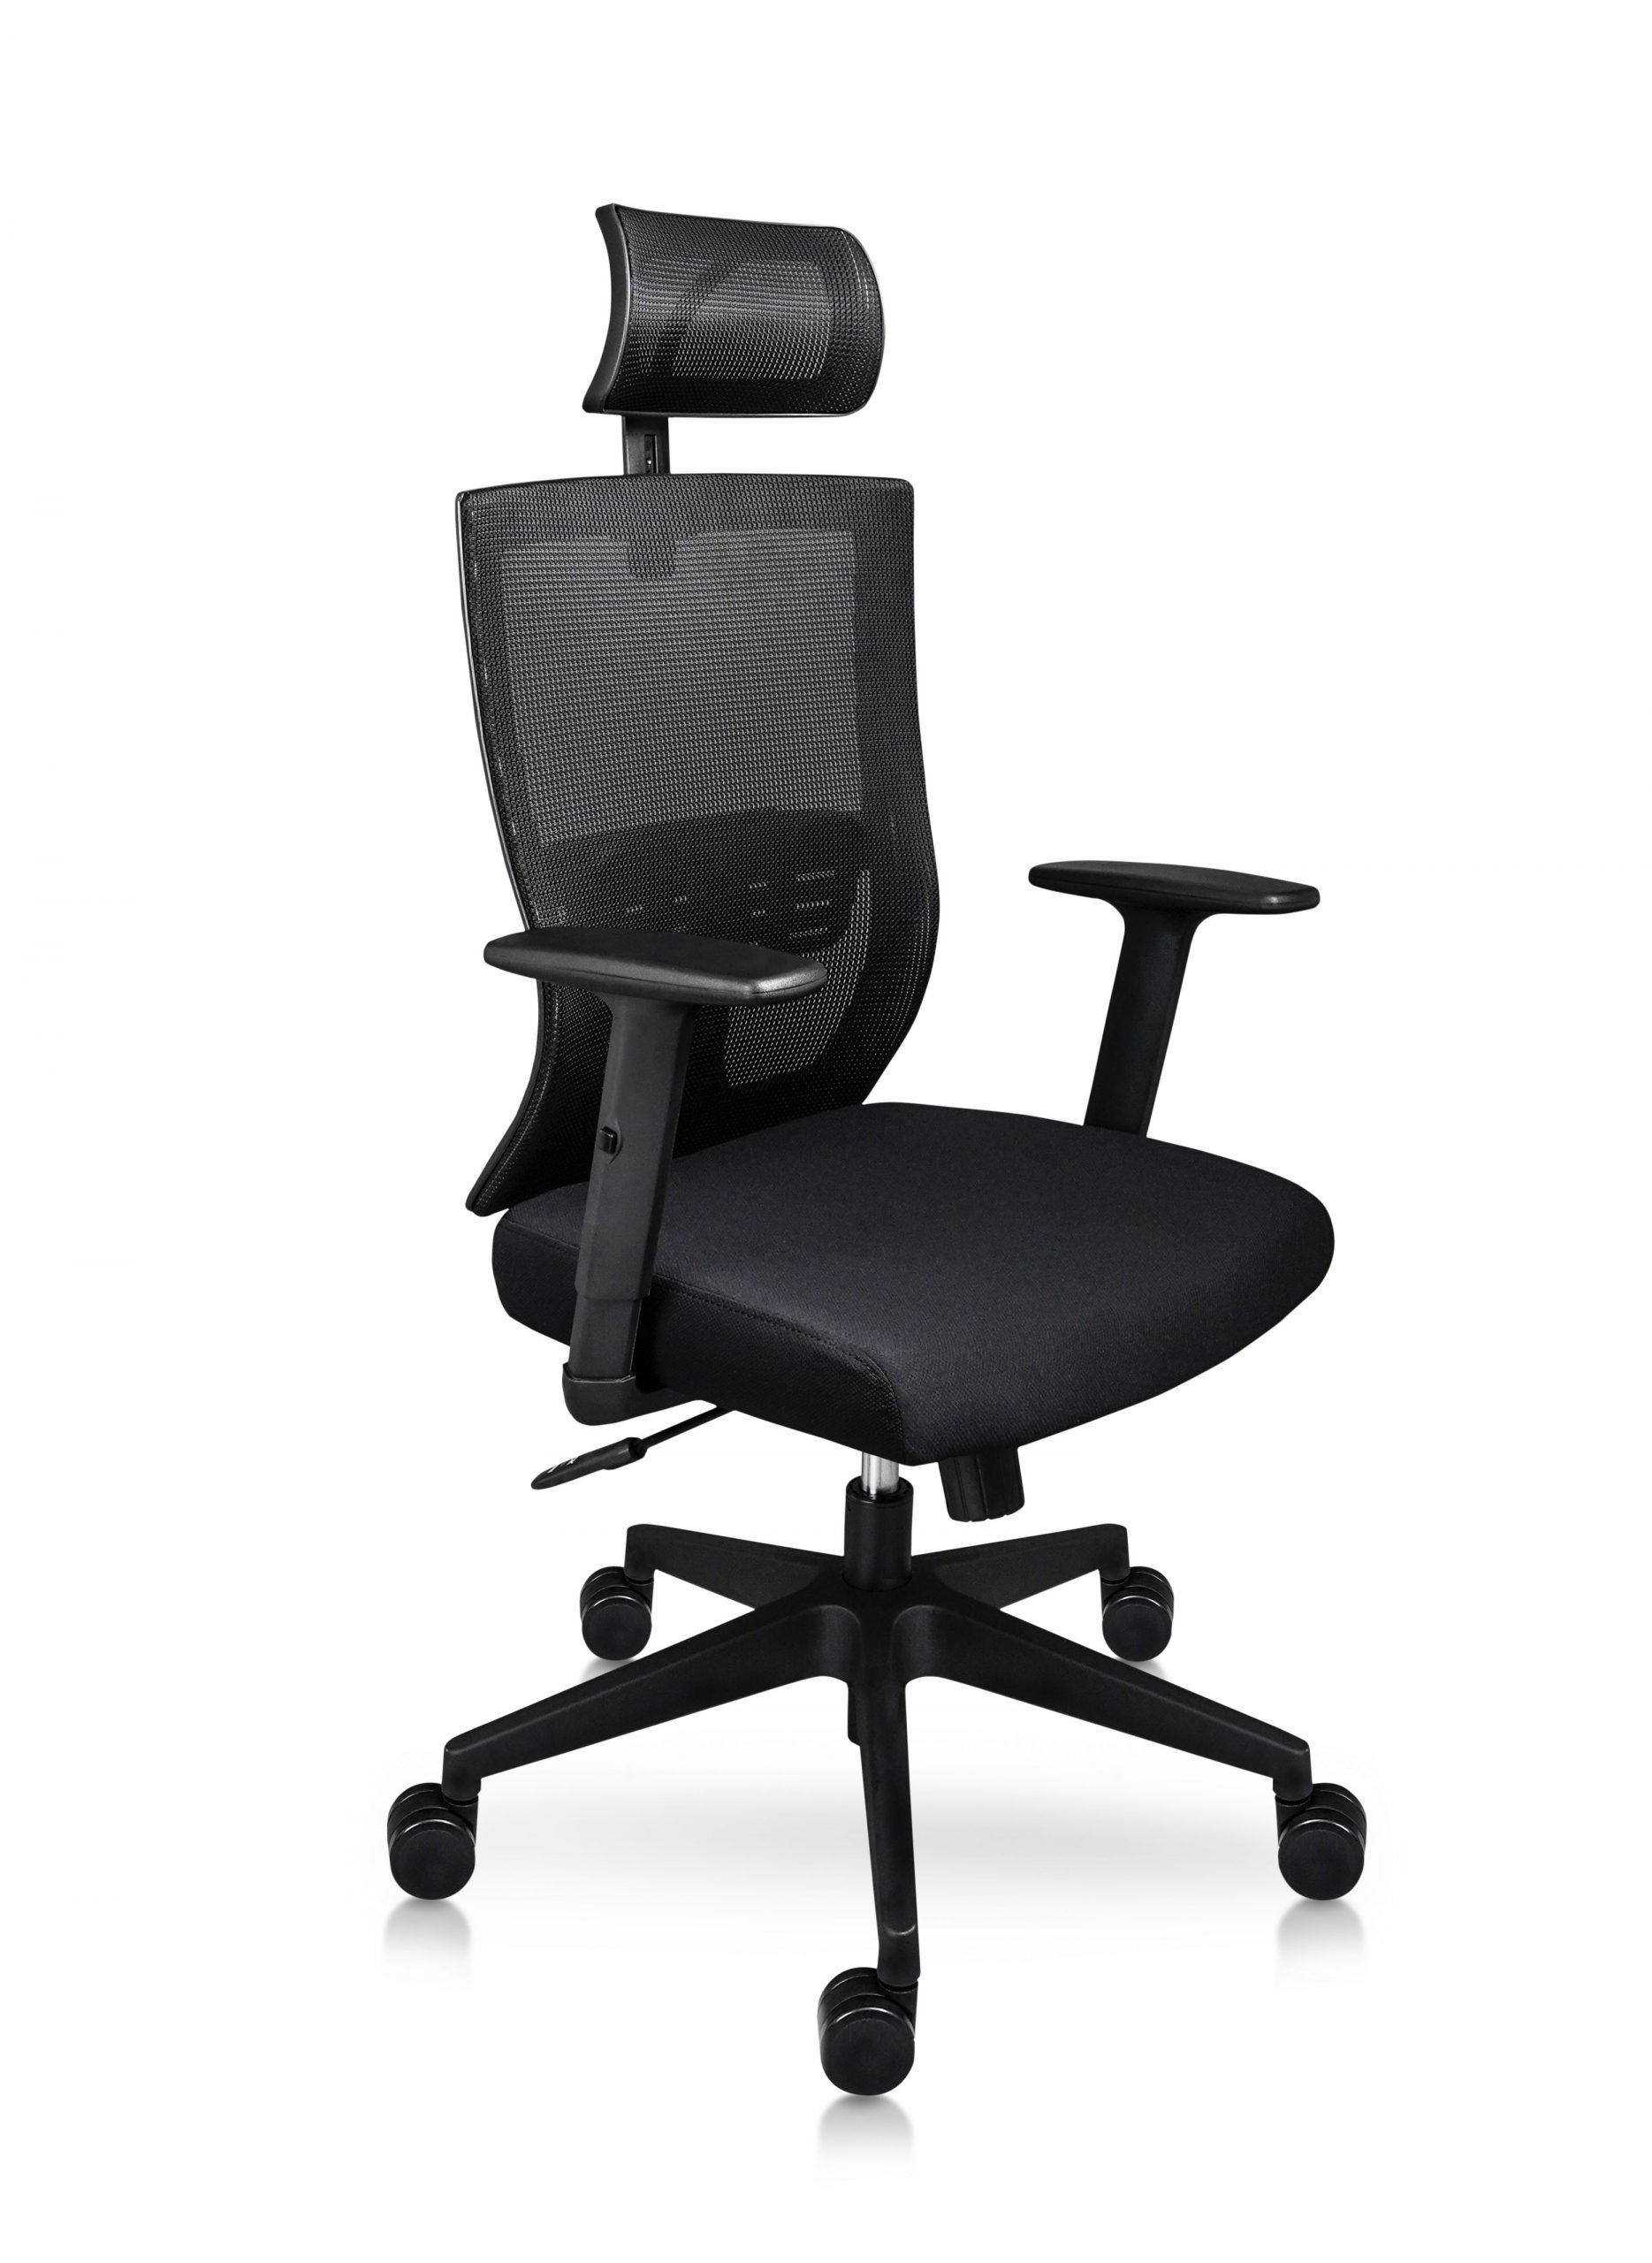 Sillas de oficina ergonómicas, silla de escritorio ejecutiva de malla,  silla de trabajo con respaldo alto con reposacabezas y brazos ajustables,  silla